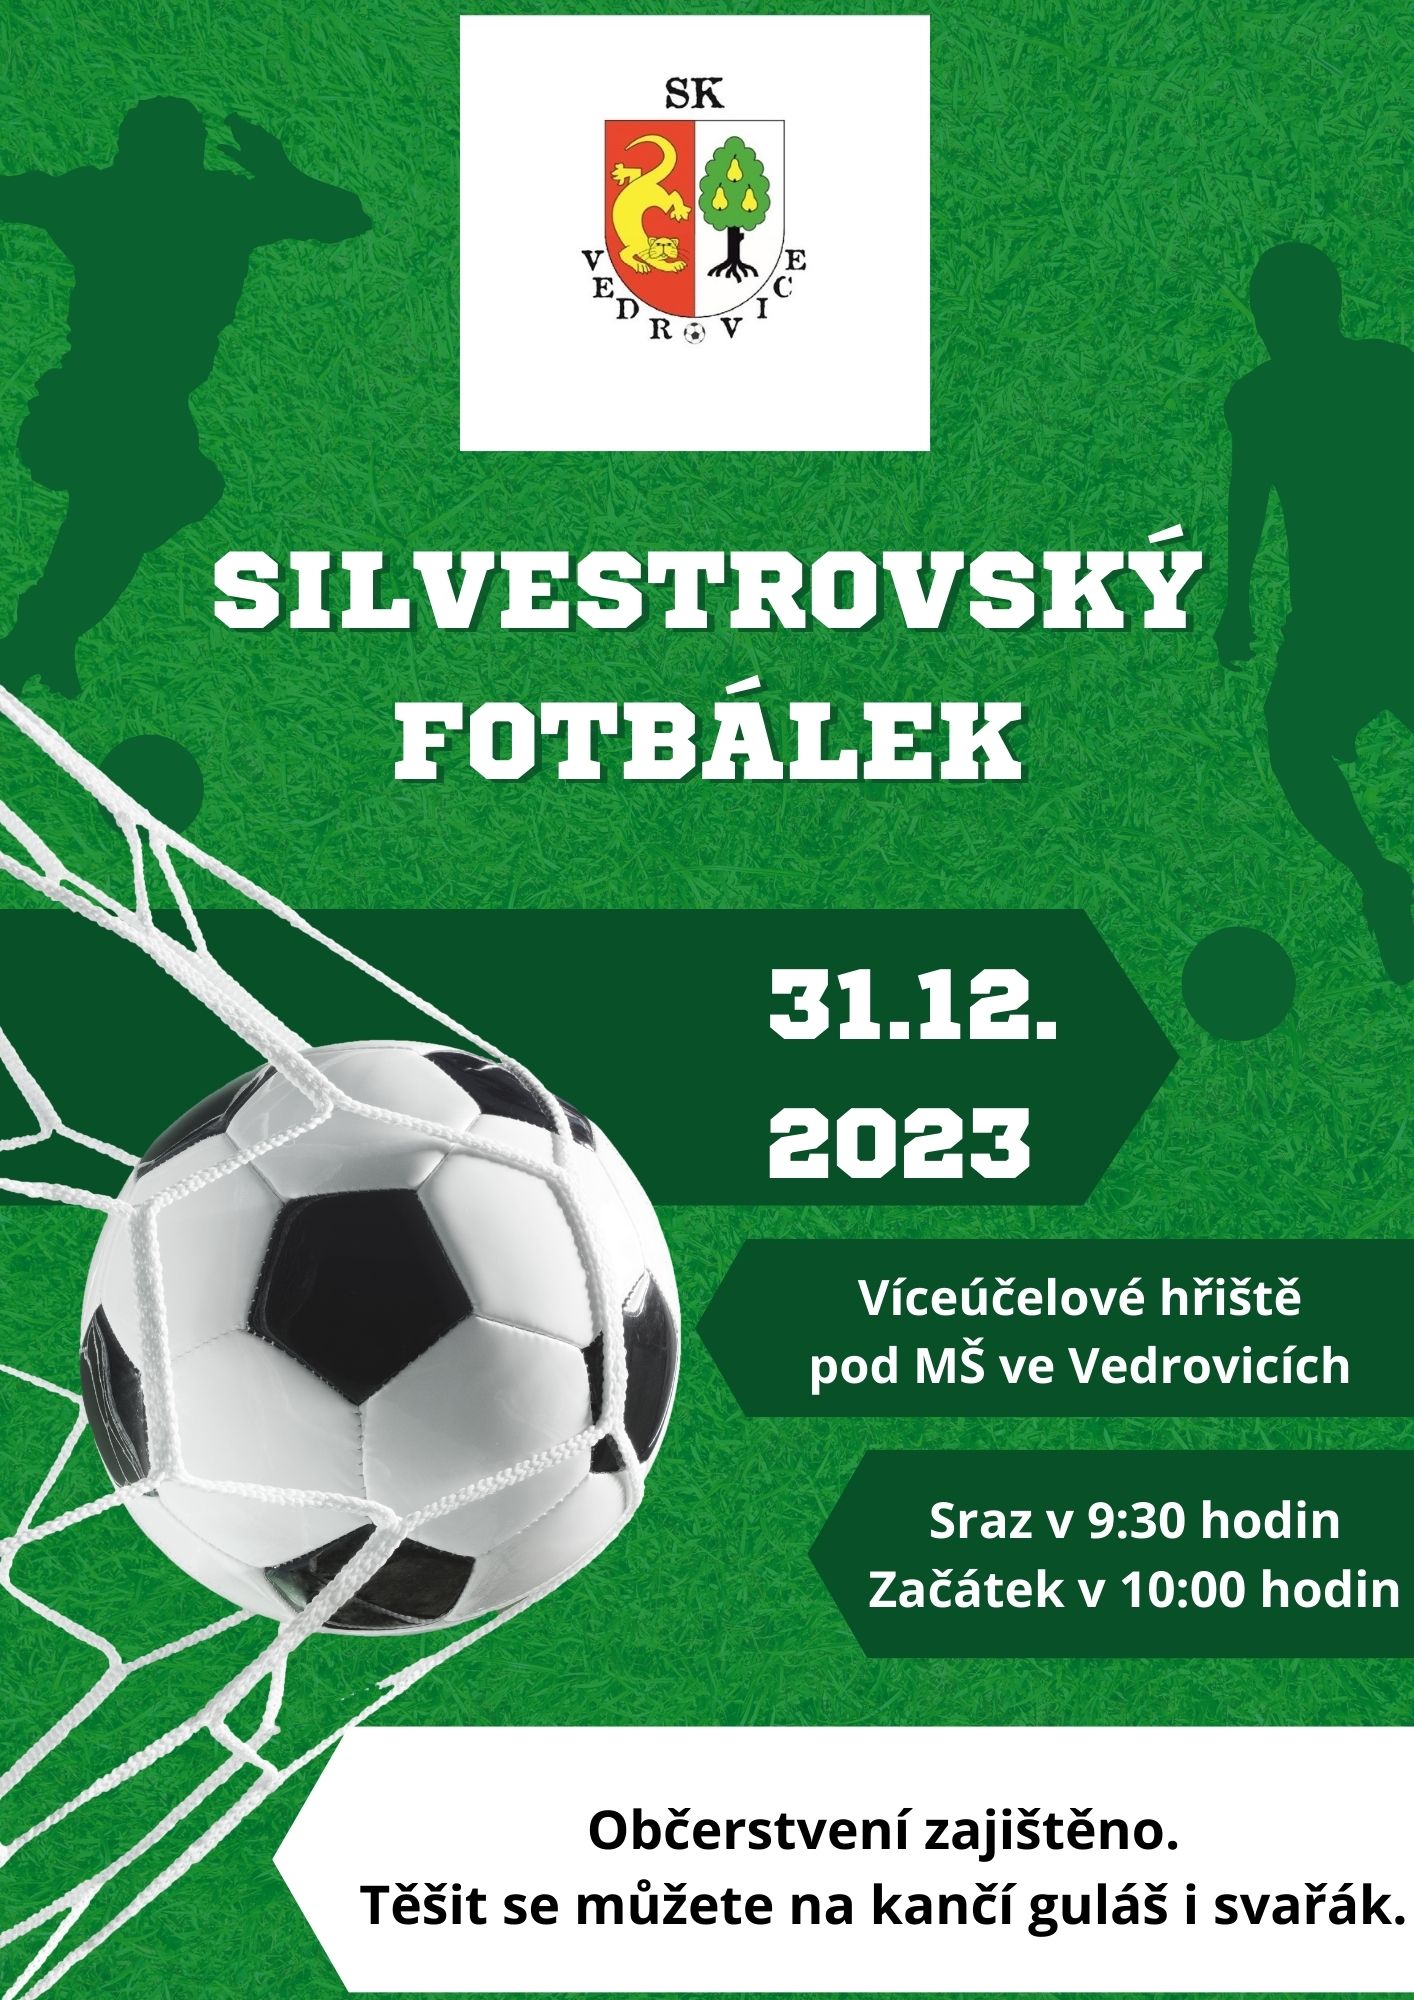 Silvestrovsky-fotbalek